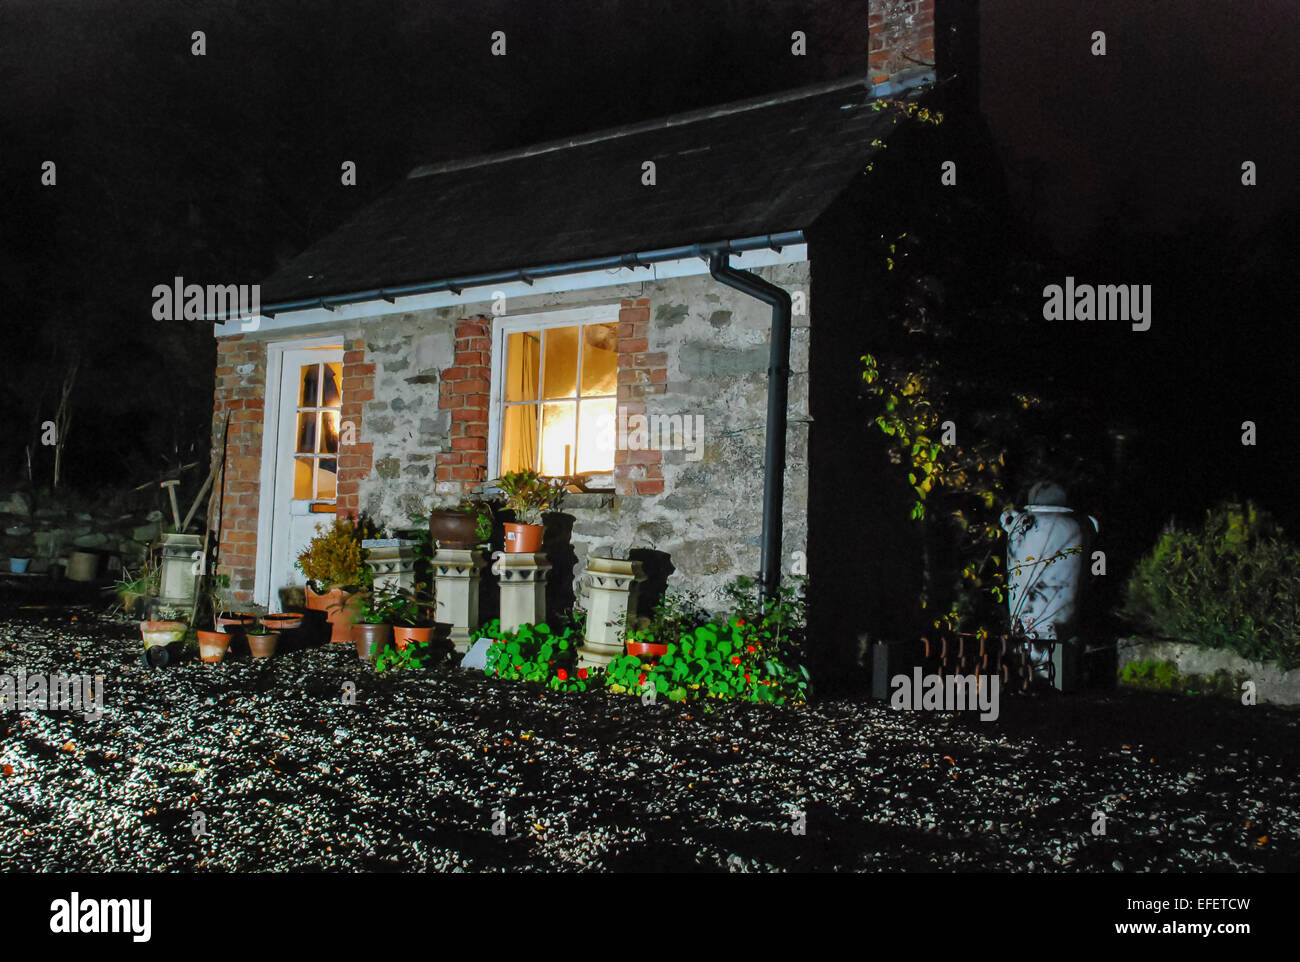 Sehr klein, altmodisch Irischen Mühle - Besitzer Cottage, das war eine gemeinsame Familie zu Hause in der 17., 18. und 19. Jahrhundert. Stockfoto